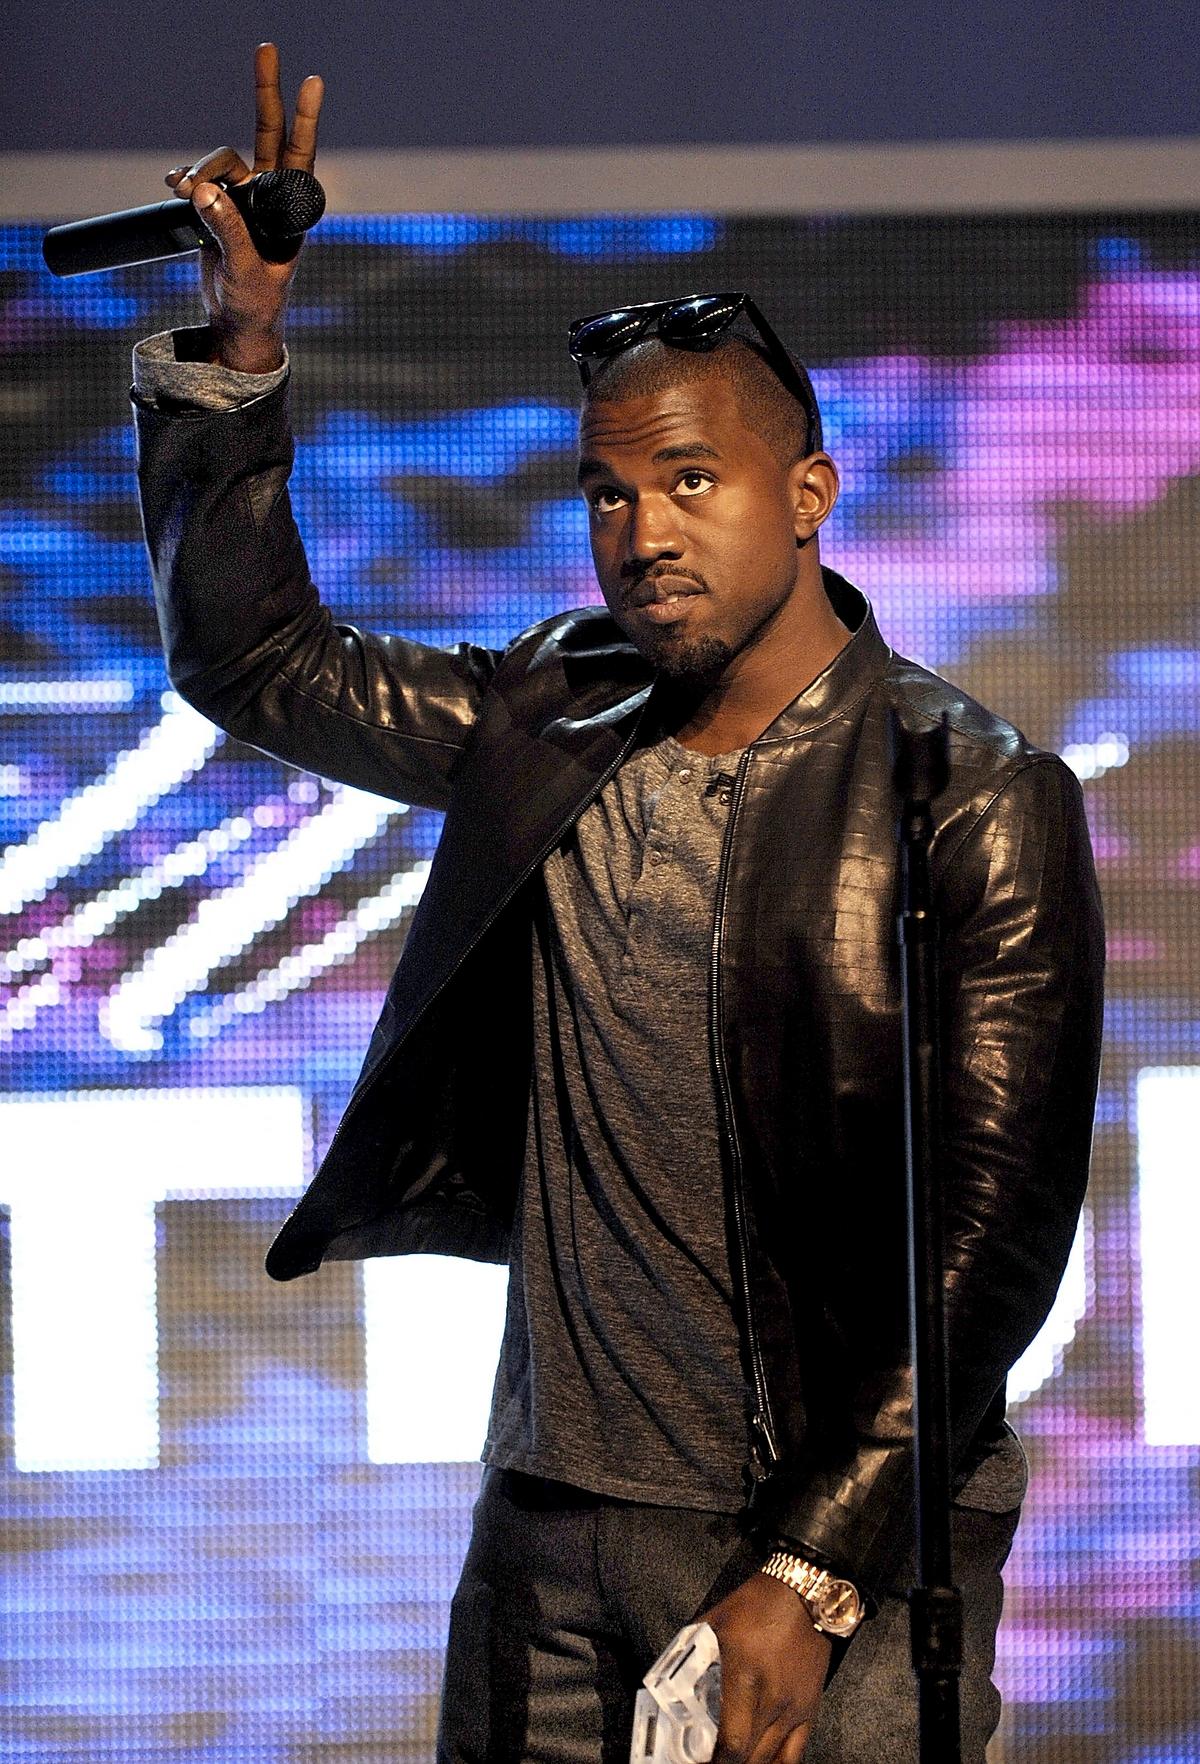 KOntroversiell video Pelle Billing efterlyser en bredare analys när det gäller Kanye Wests musikvideo ”Monster”, där rapstjärnan poserar med till synes livlösa kvinnor.